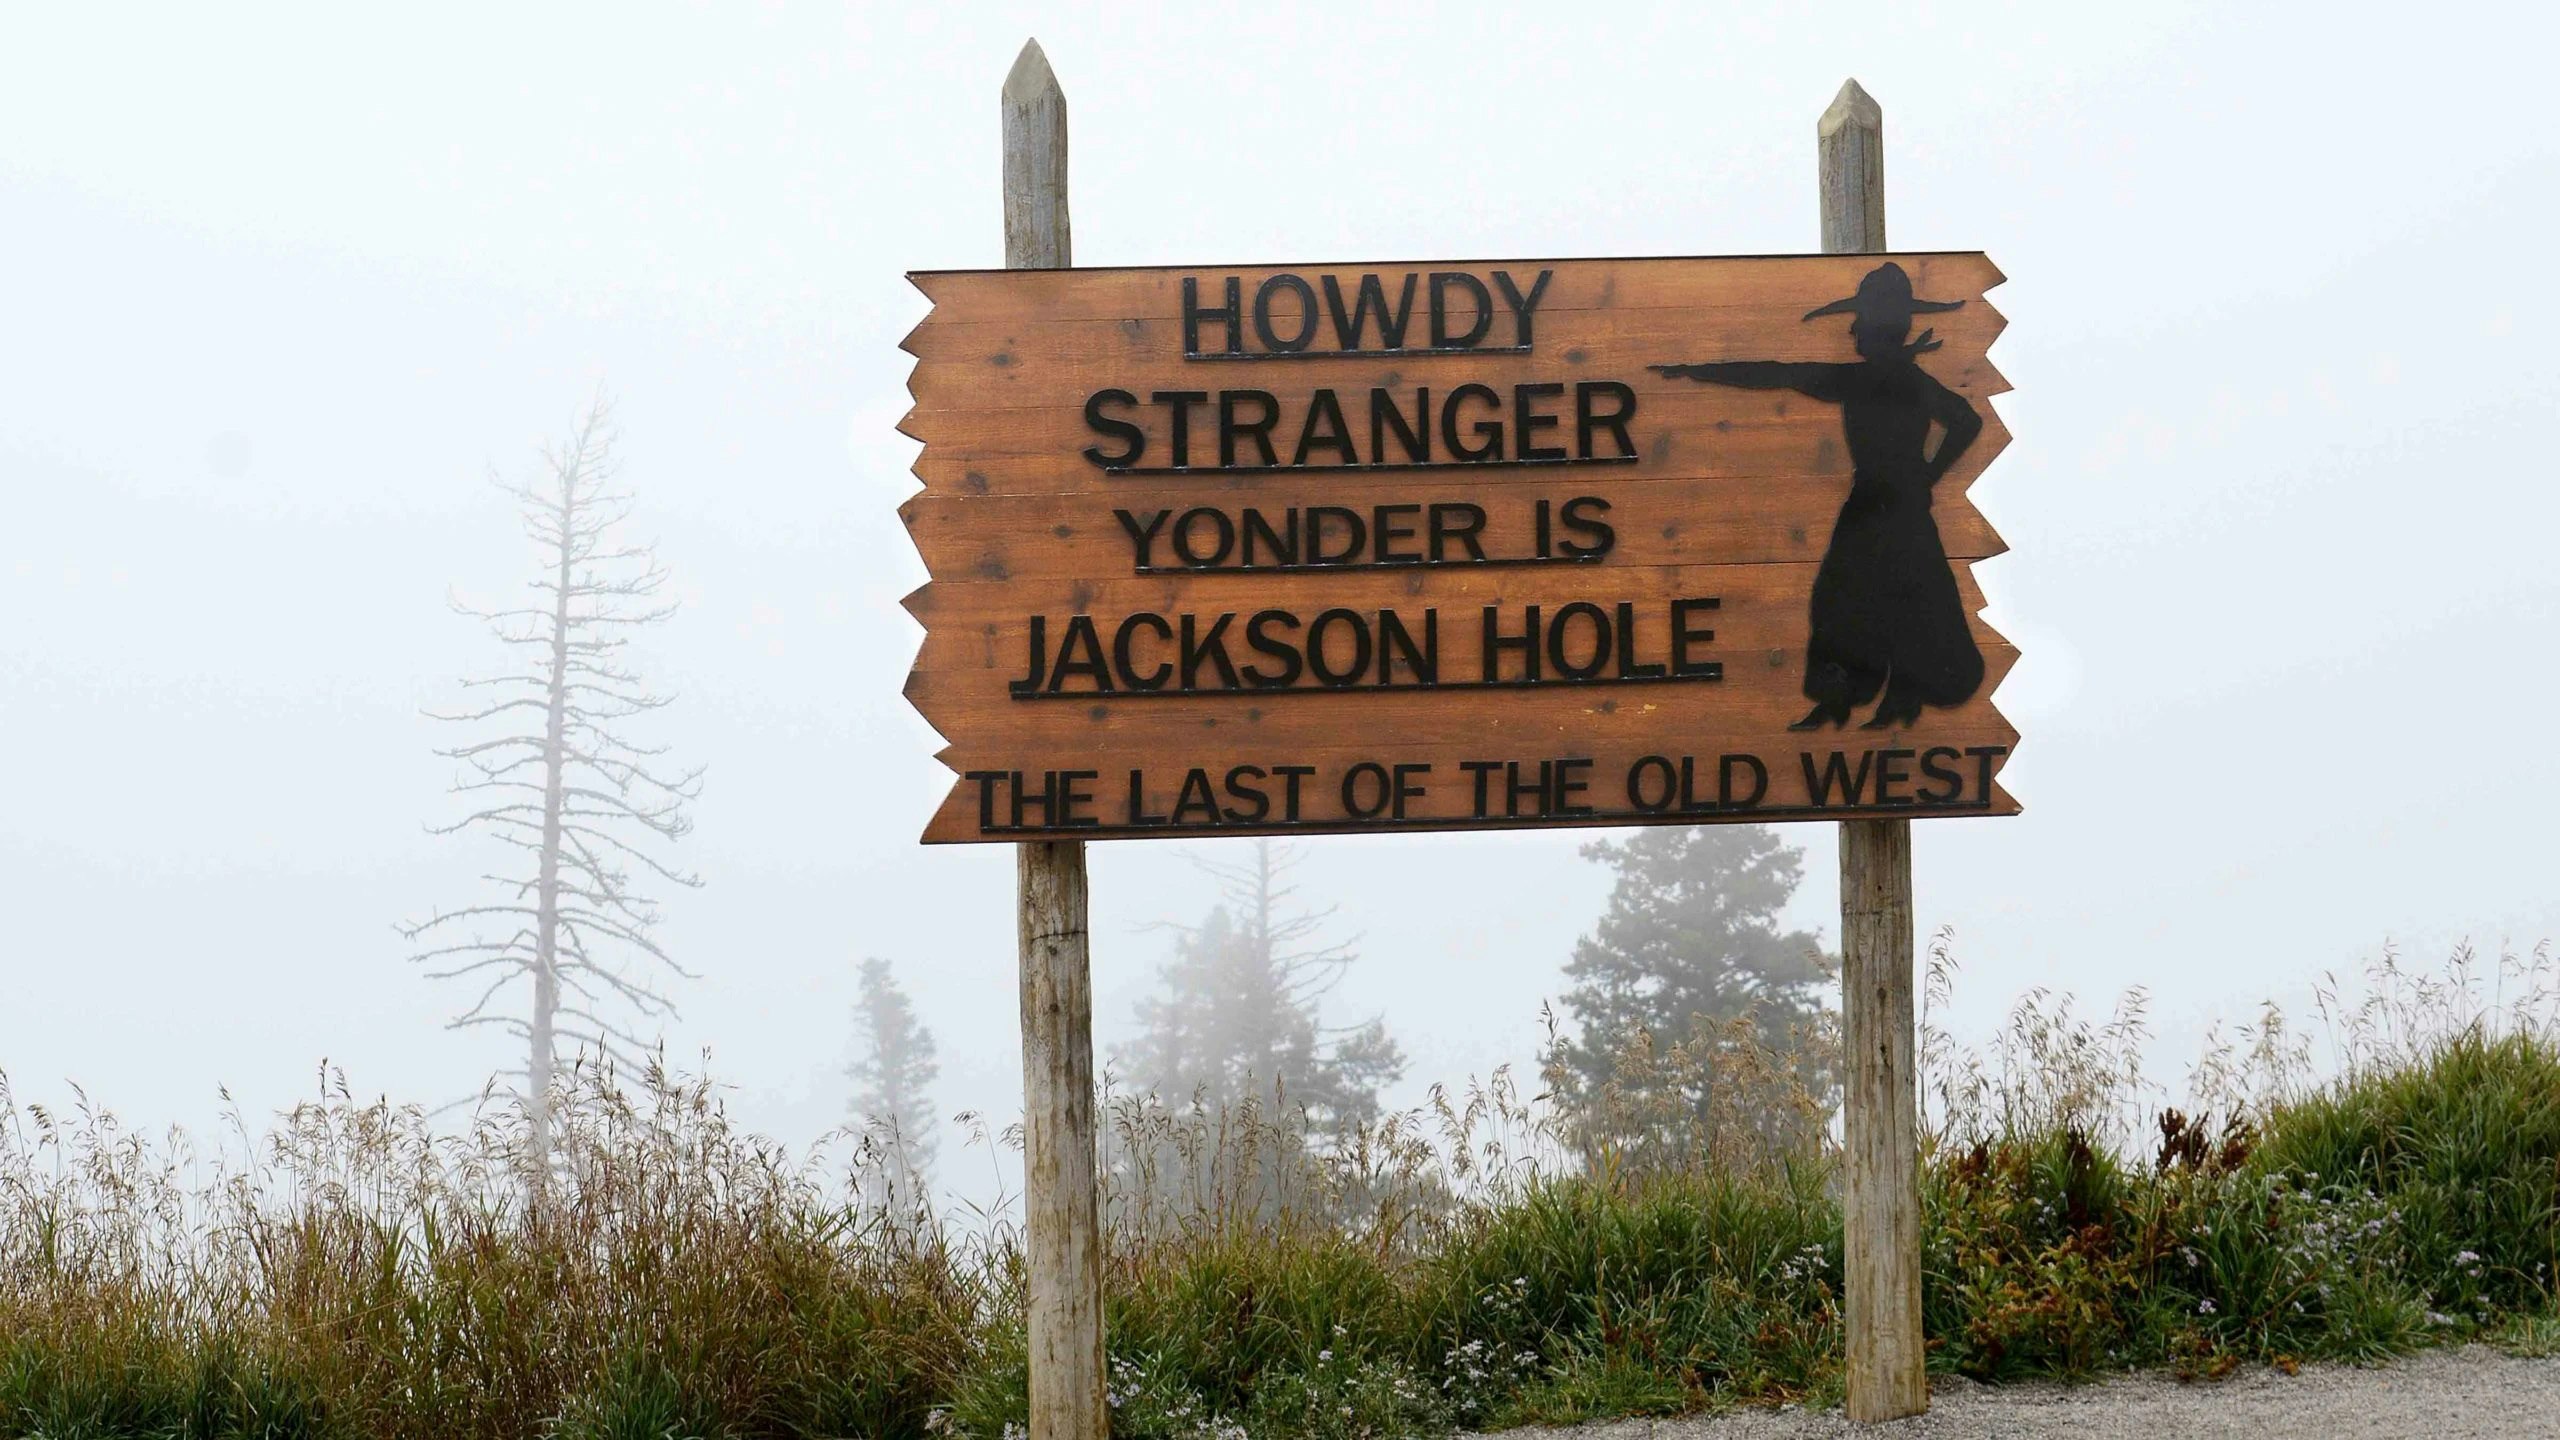 Jackson howdy stranger 1 10 24 jpg